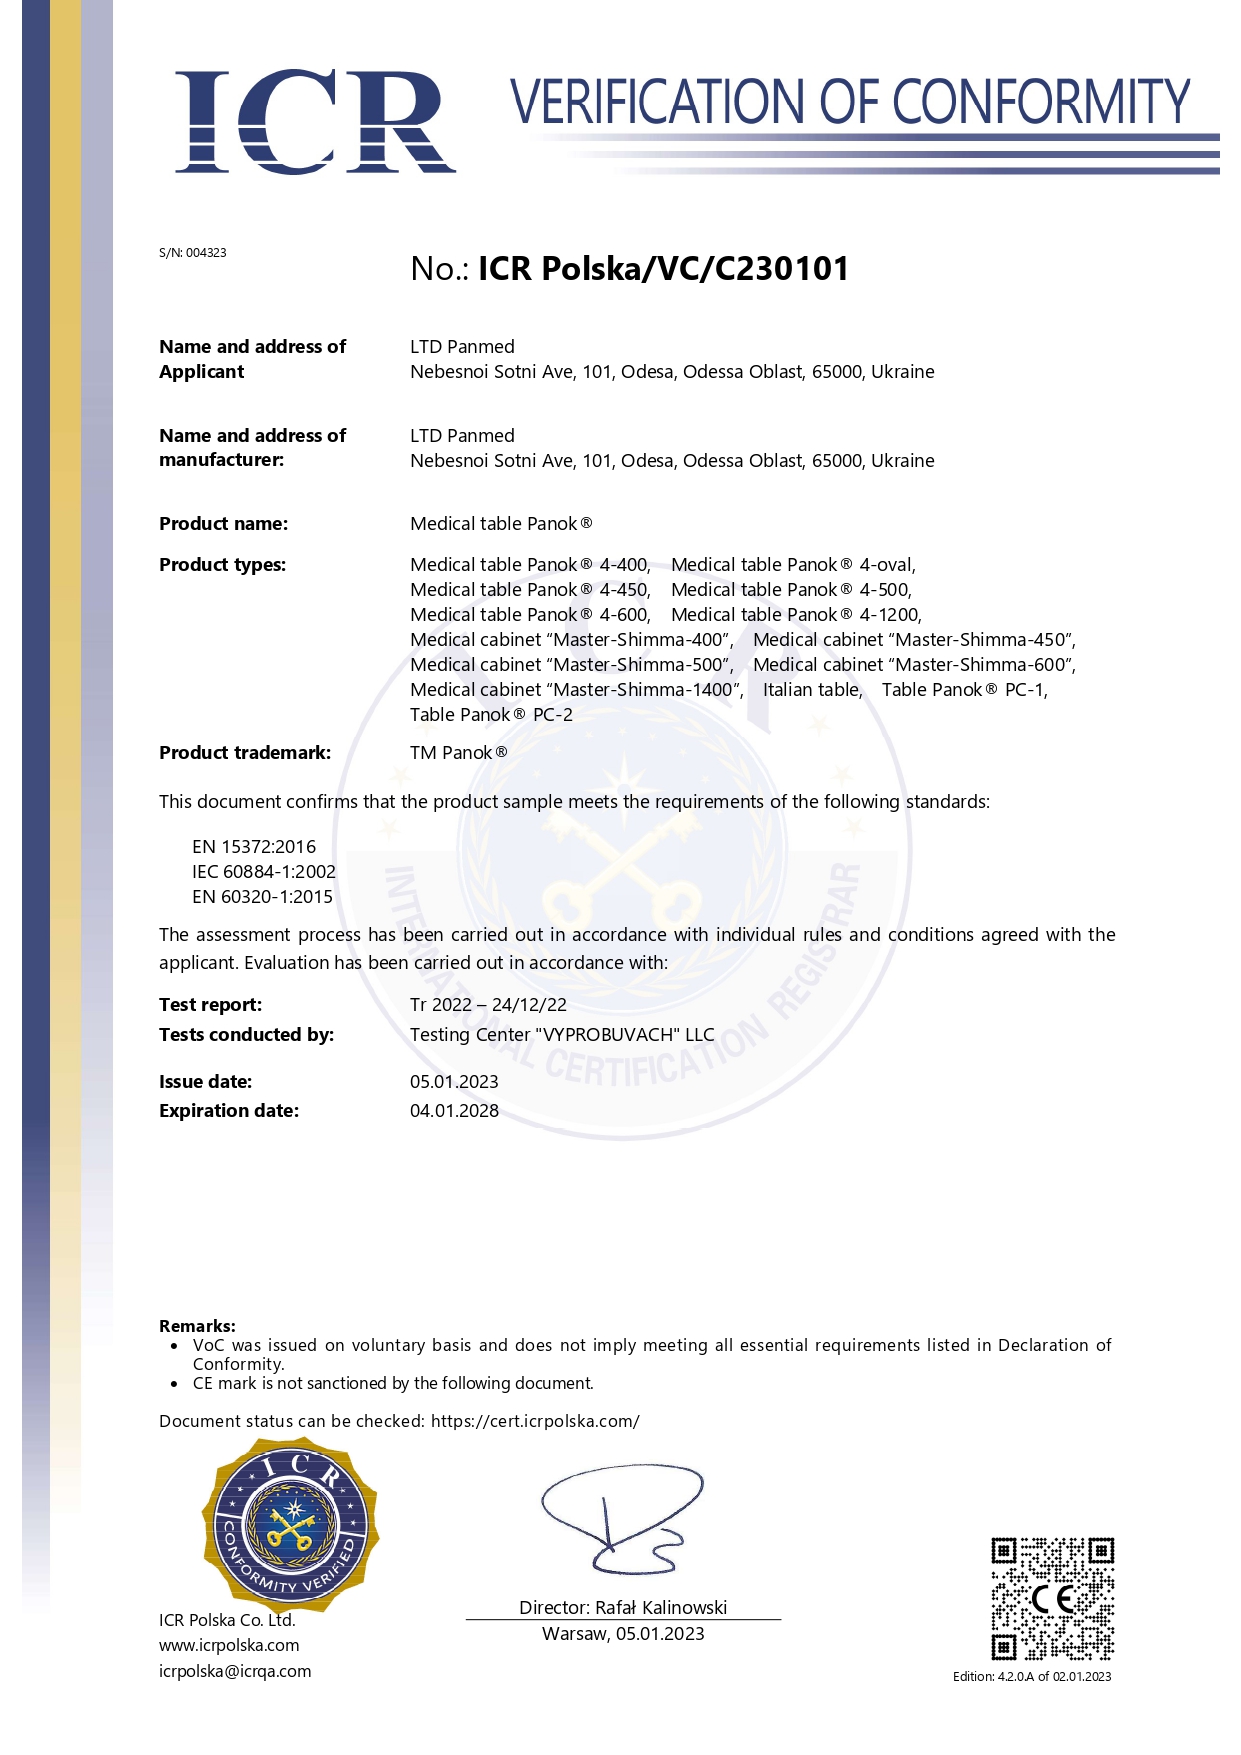 Сертификат и декларация верификации соответствия СЕ